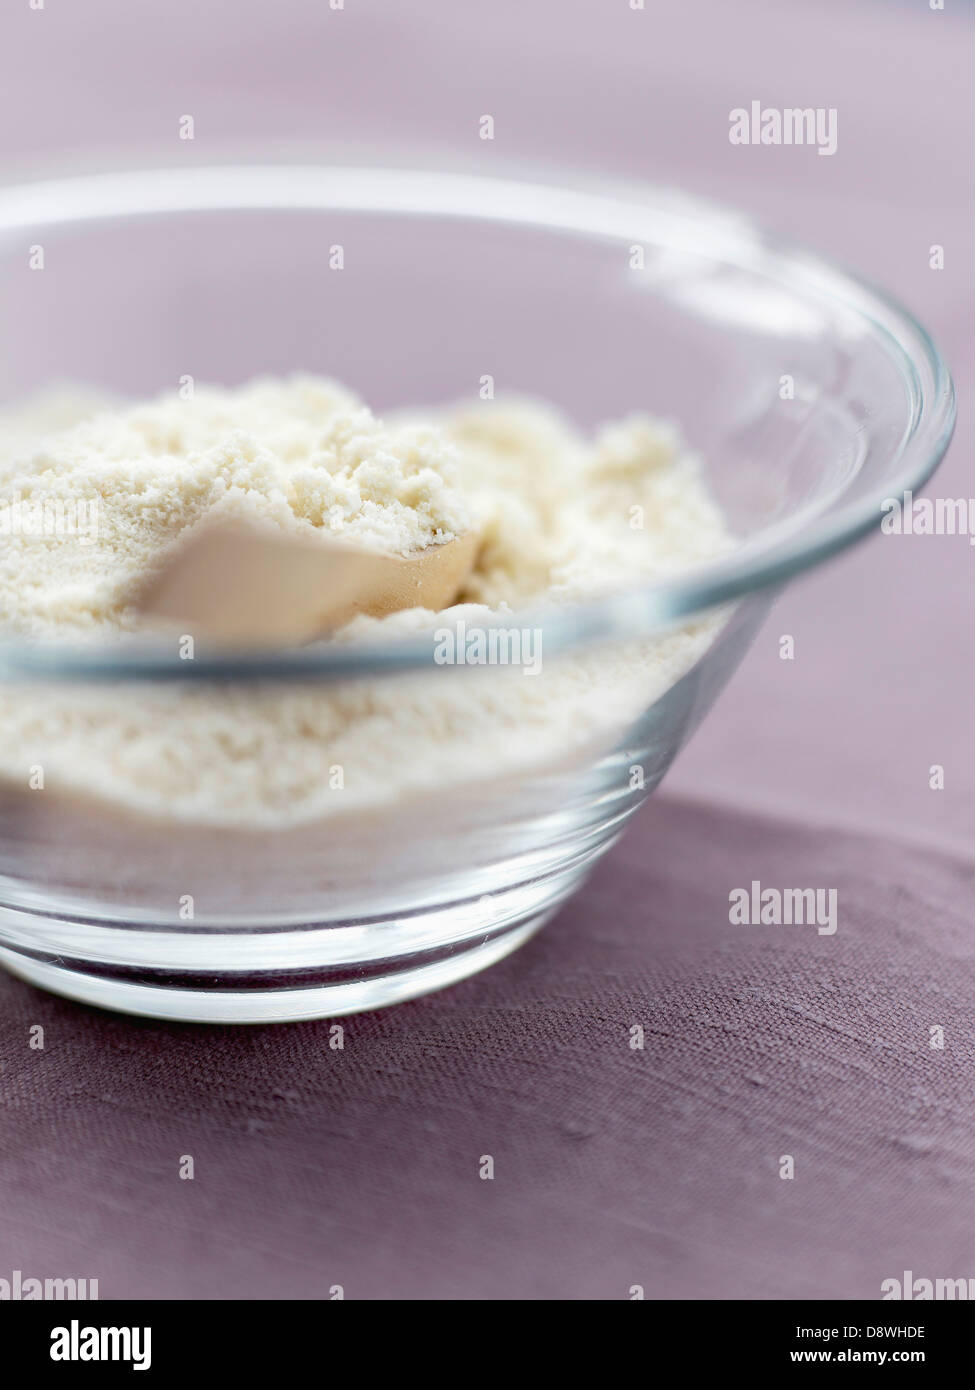 La mezcla de la almendra en polvo y el azúcar glas Foto de stock